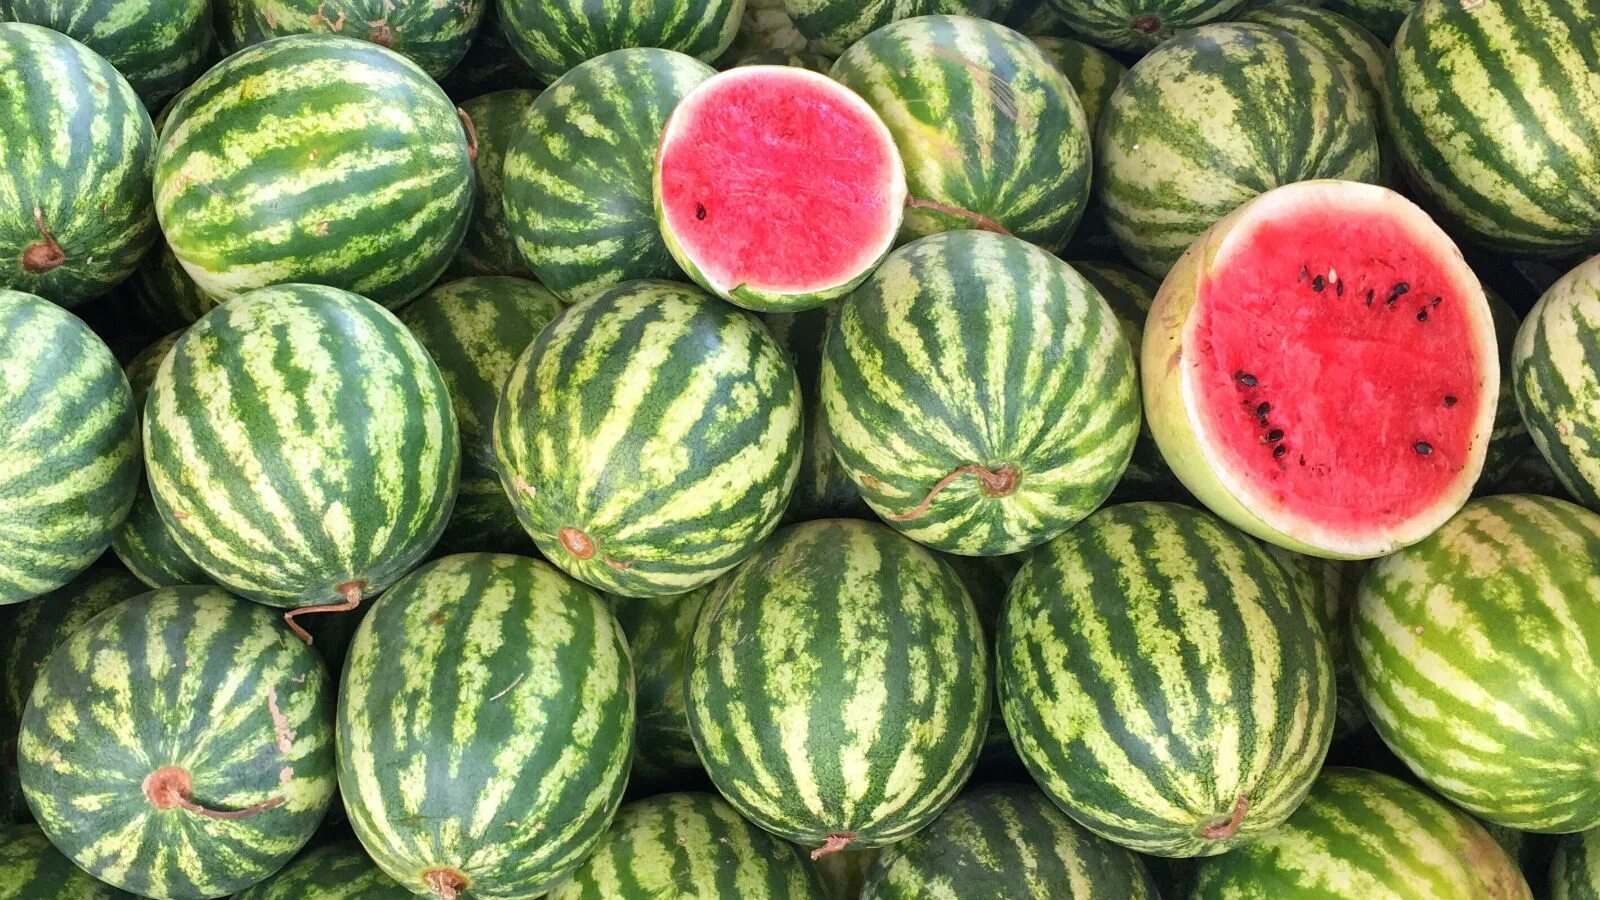 Сорт зеленого арбуза. Туркменистан,дыни, бахчи. Арбуз super Luxe Watermelon. Сорт арбуза Дайтона.